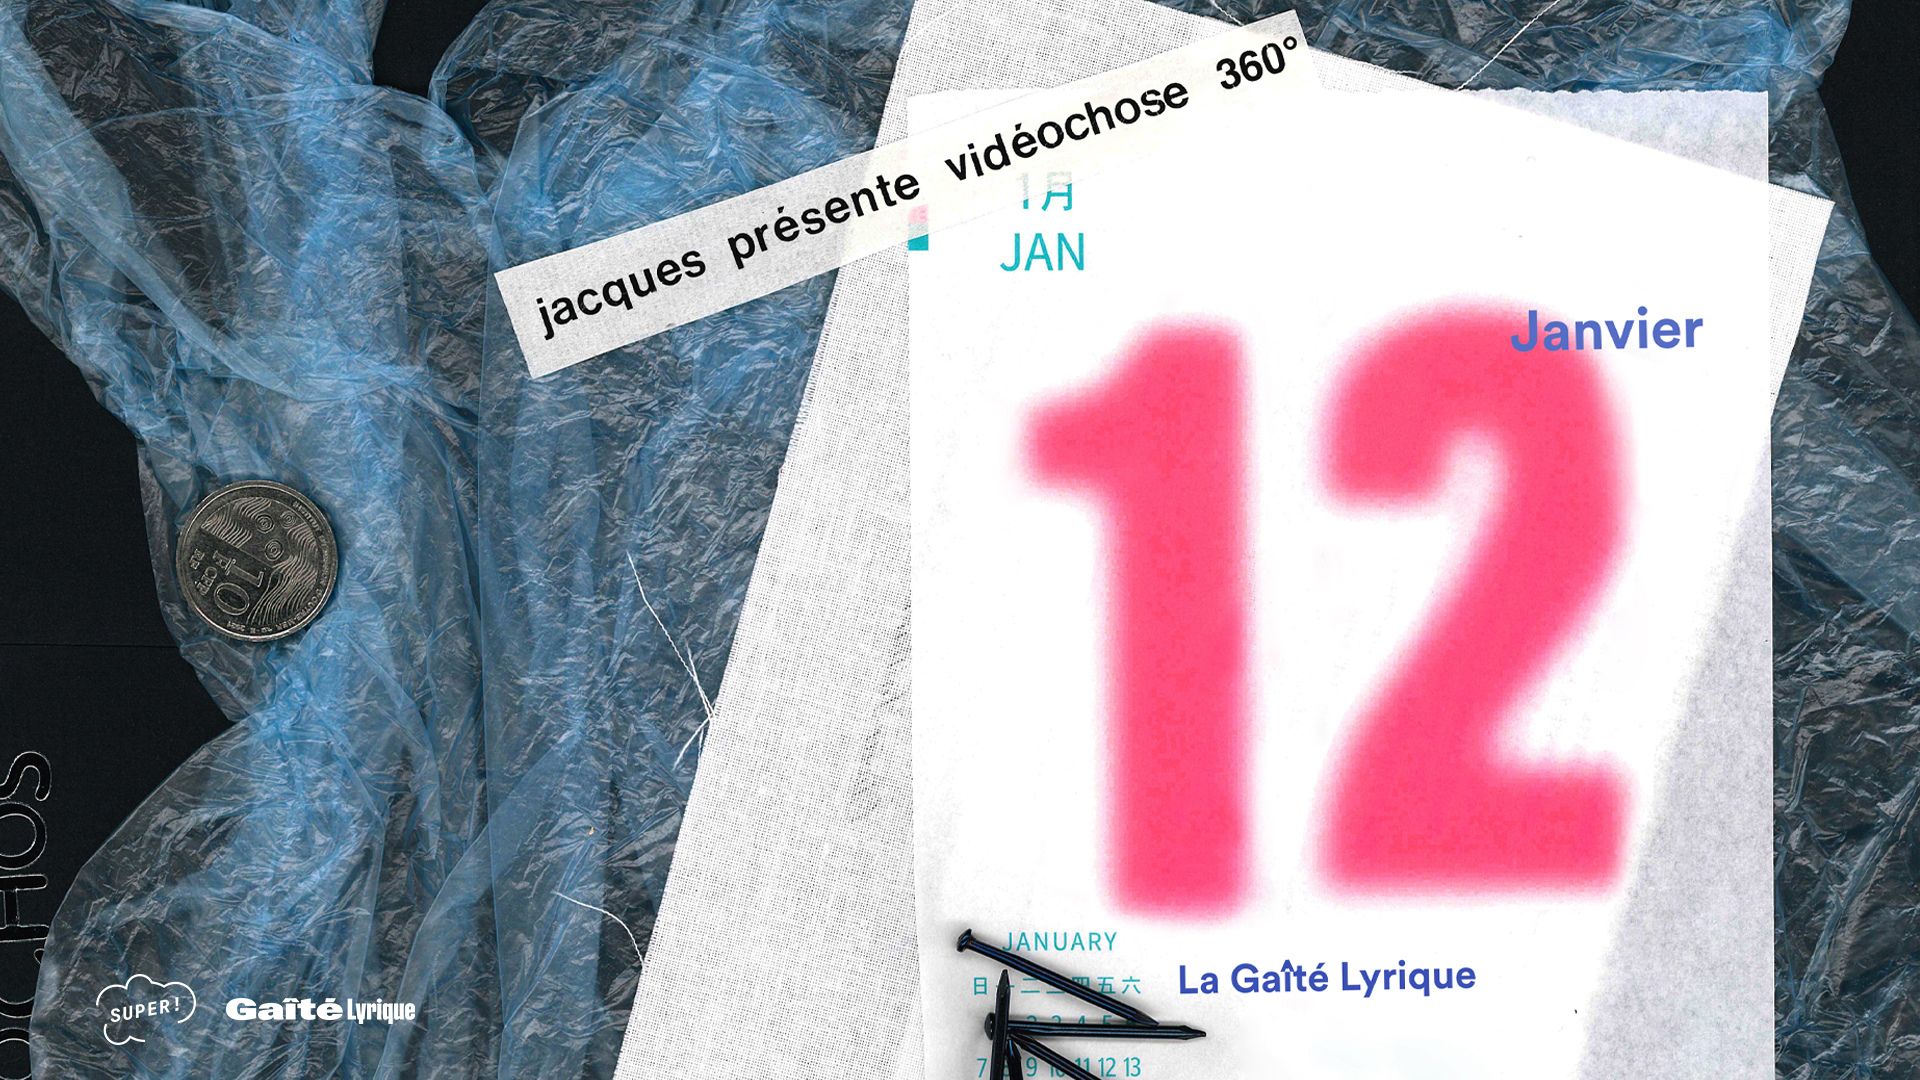 Affiche du concert de Jacques à La Gaîté Lyrique